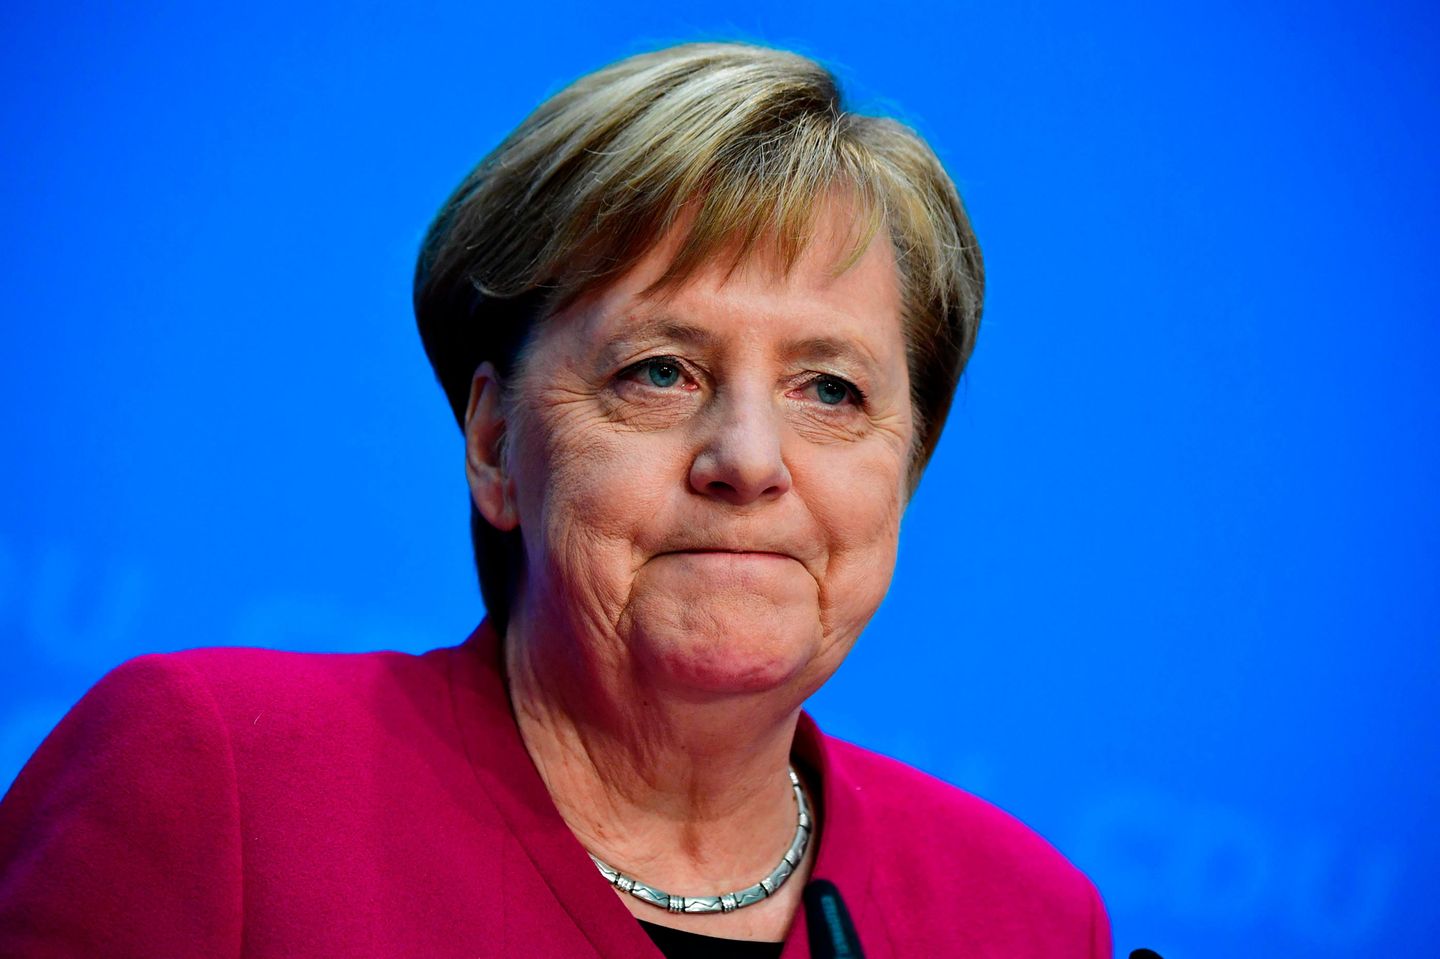 Më në fund: Merkel i përgjigjet pyetjes që e kishte shmangur prej kohësh